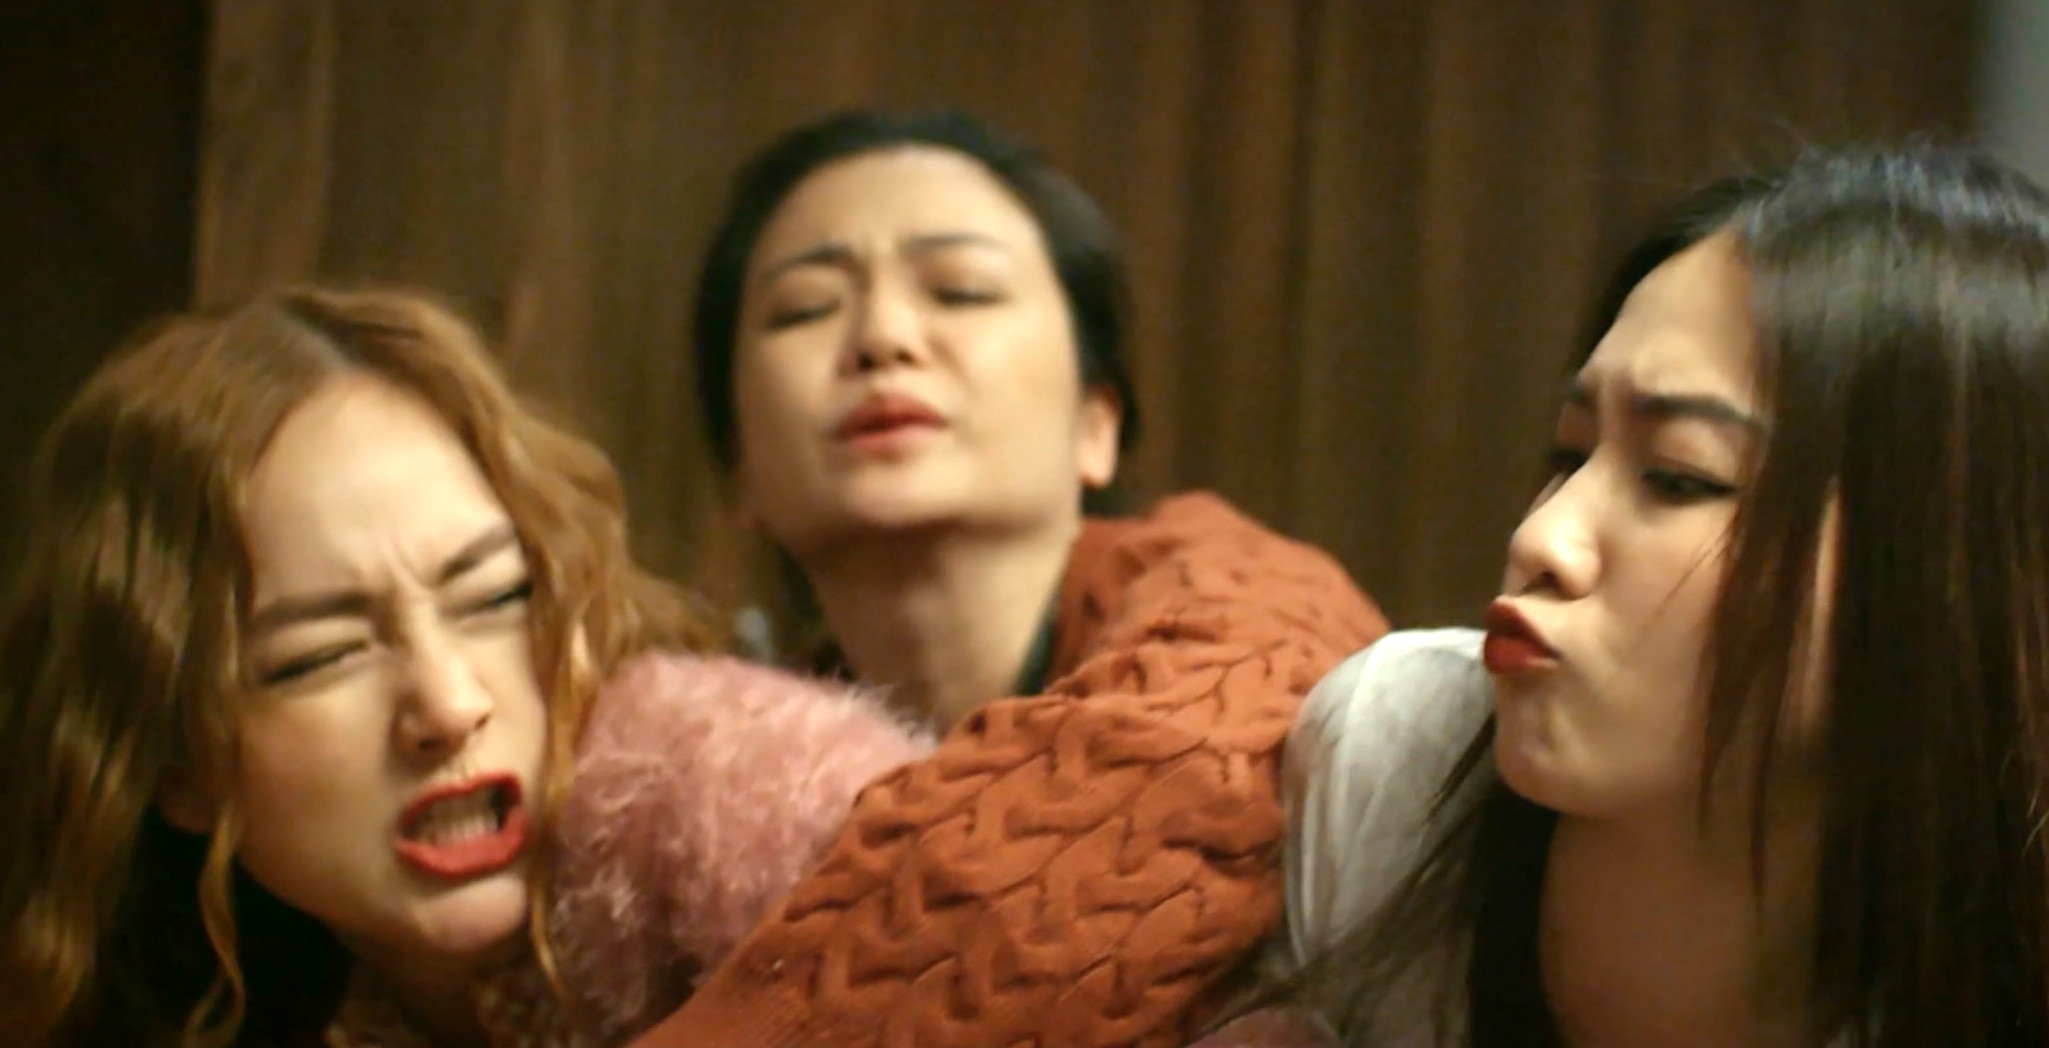 Ngân Thảo - cô gái hôn Mono trong MV: Nhan sắc xinh đẹp, chủ động khóa mạng  xã hội vì sợ ảnh hưởng ekip